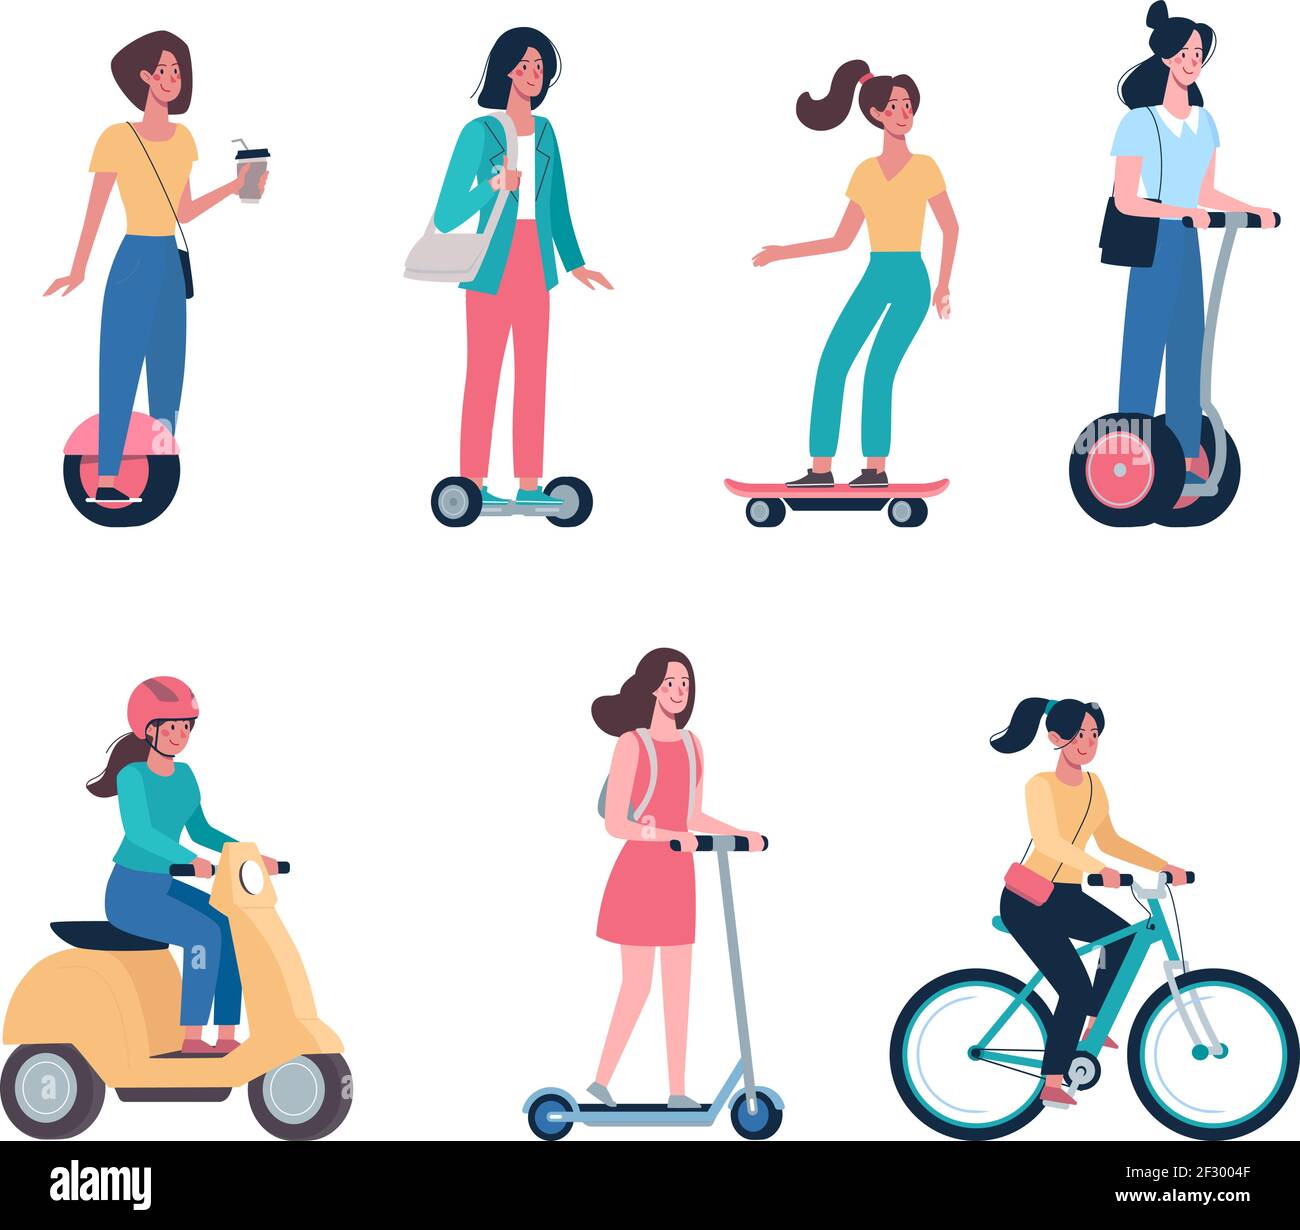 Frauen fahren moderne Elektroroller, Skateboards, Fahrräder, Mopeds. Umweltfreundliche Alternative Fahrzeuge Set. Vector Mädchen im flachen Stil Stock Vektor